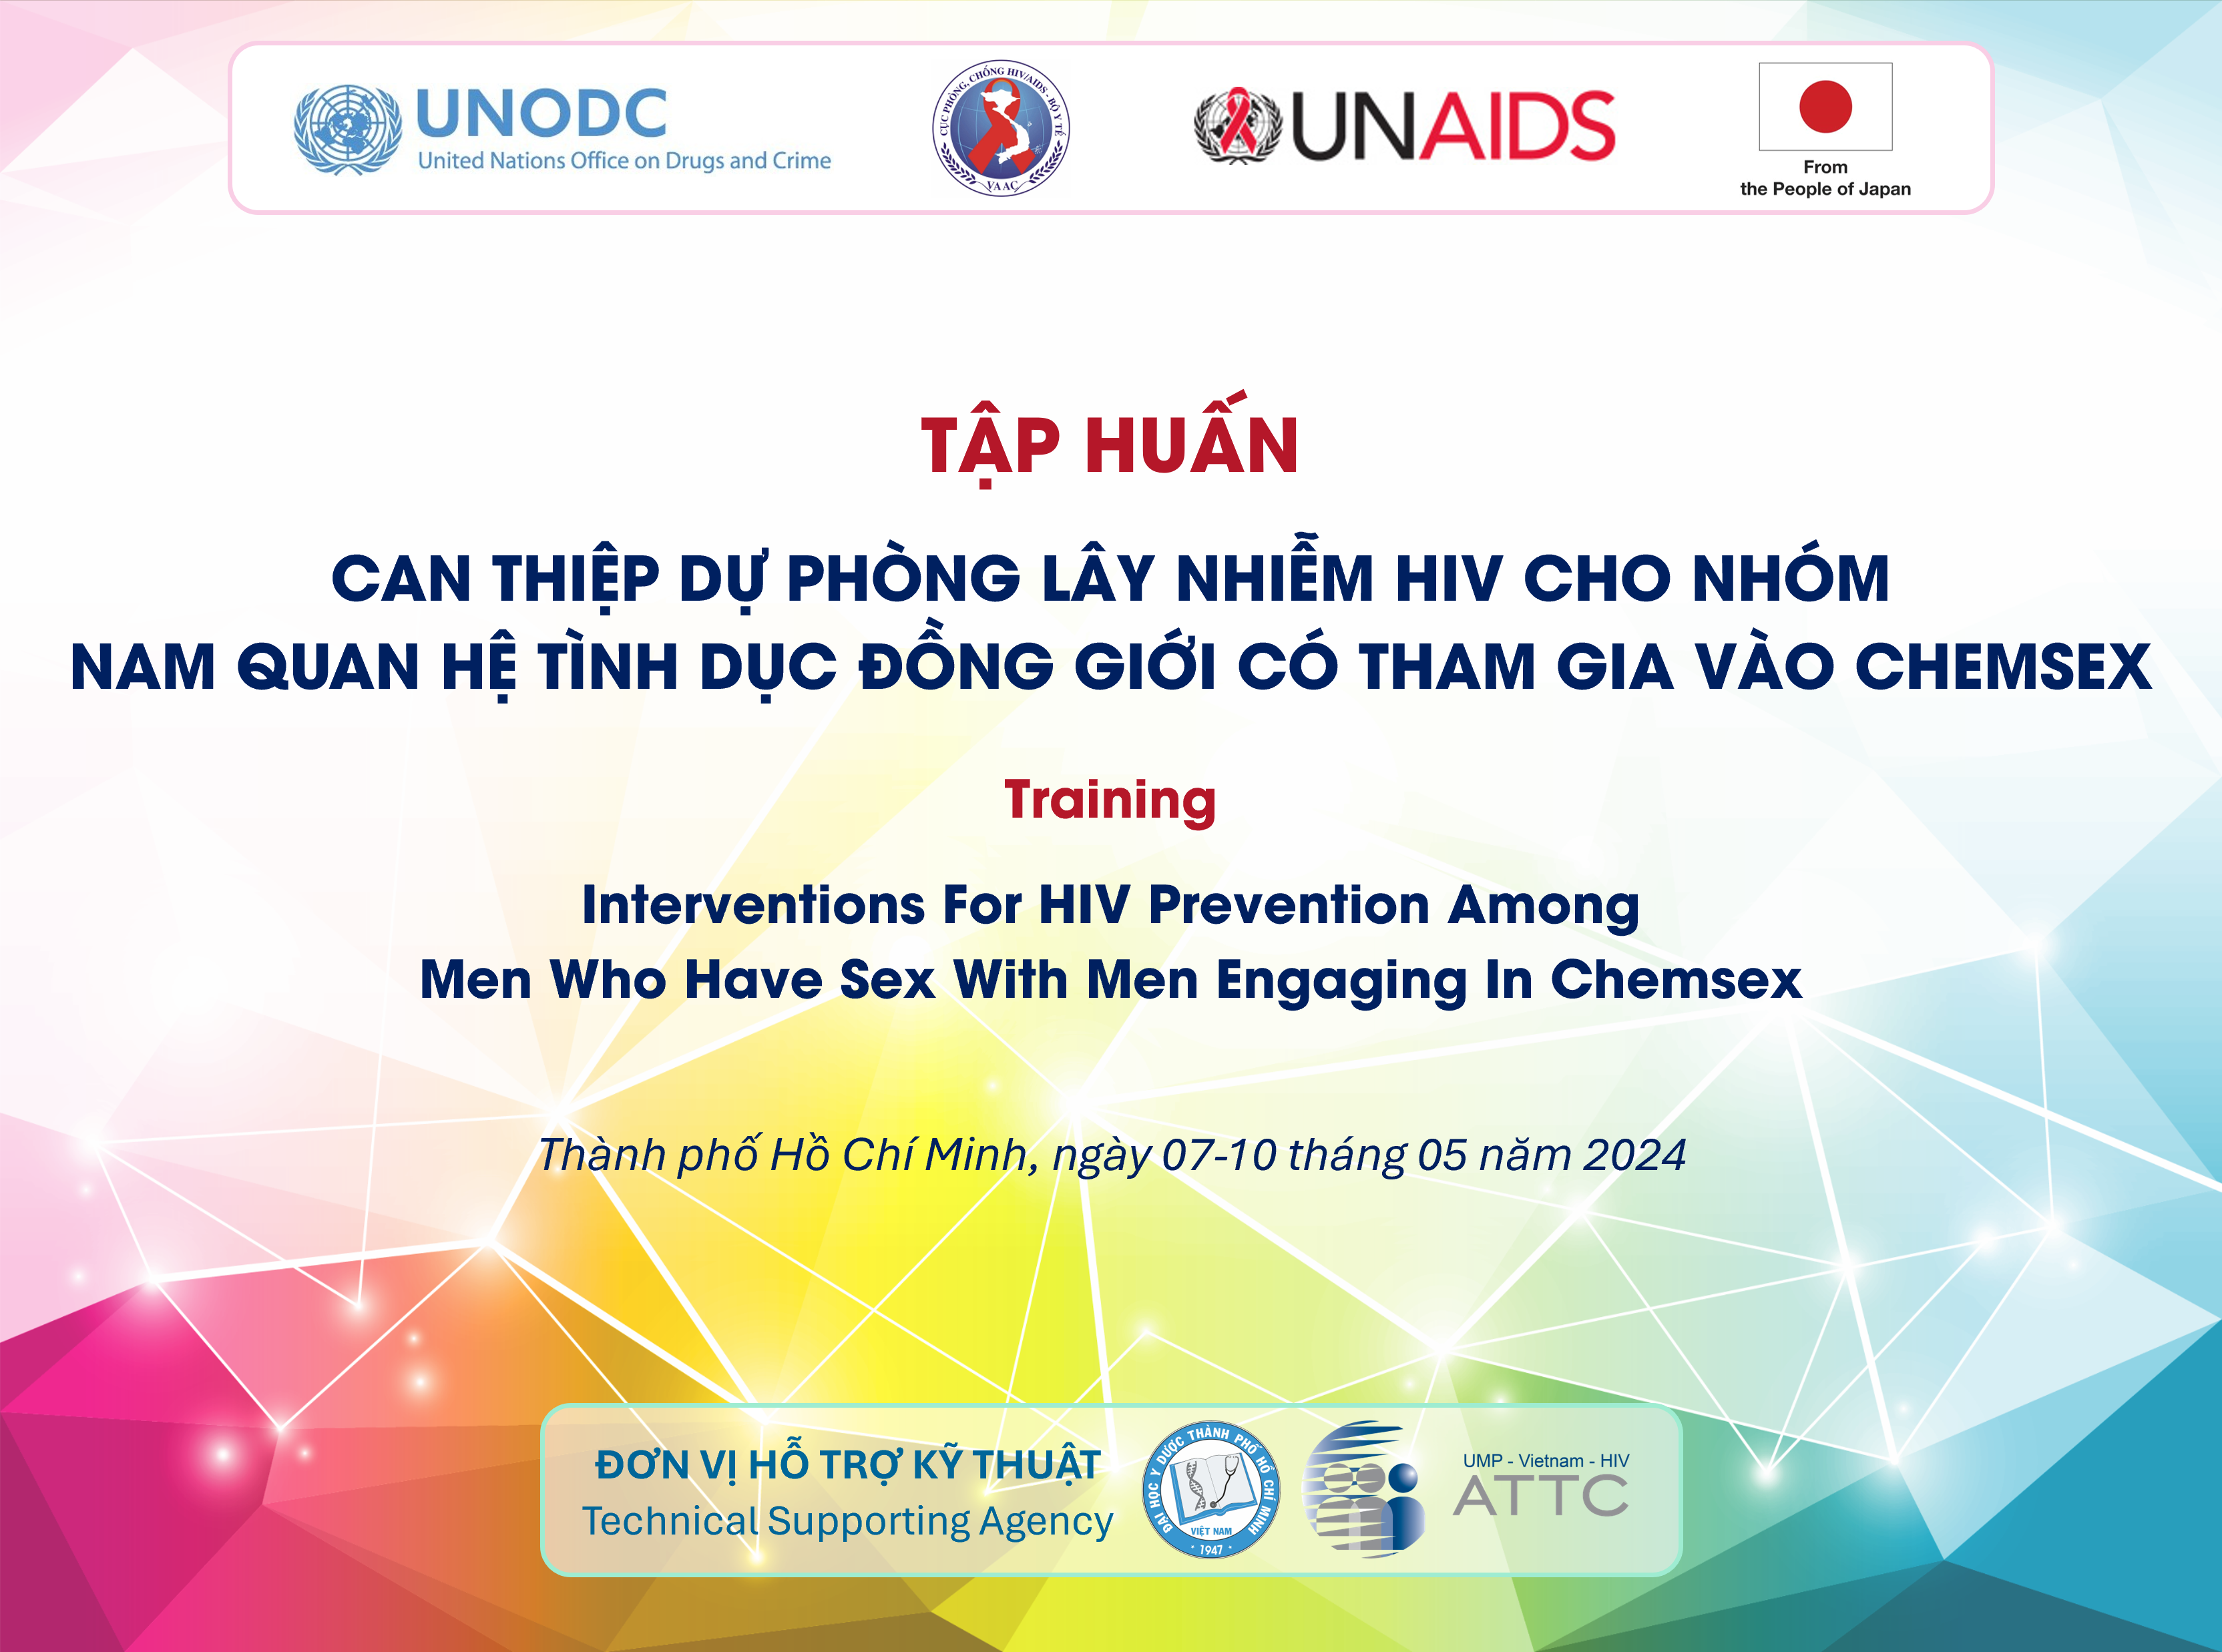 Can thiệp dự phòng lây nhiễm HIV cho nhóm MSM tham gia Chemsex - UNODC - 2024